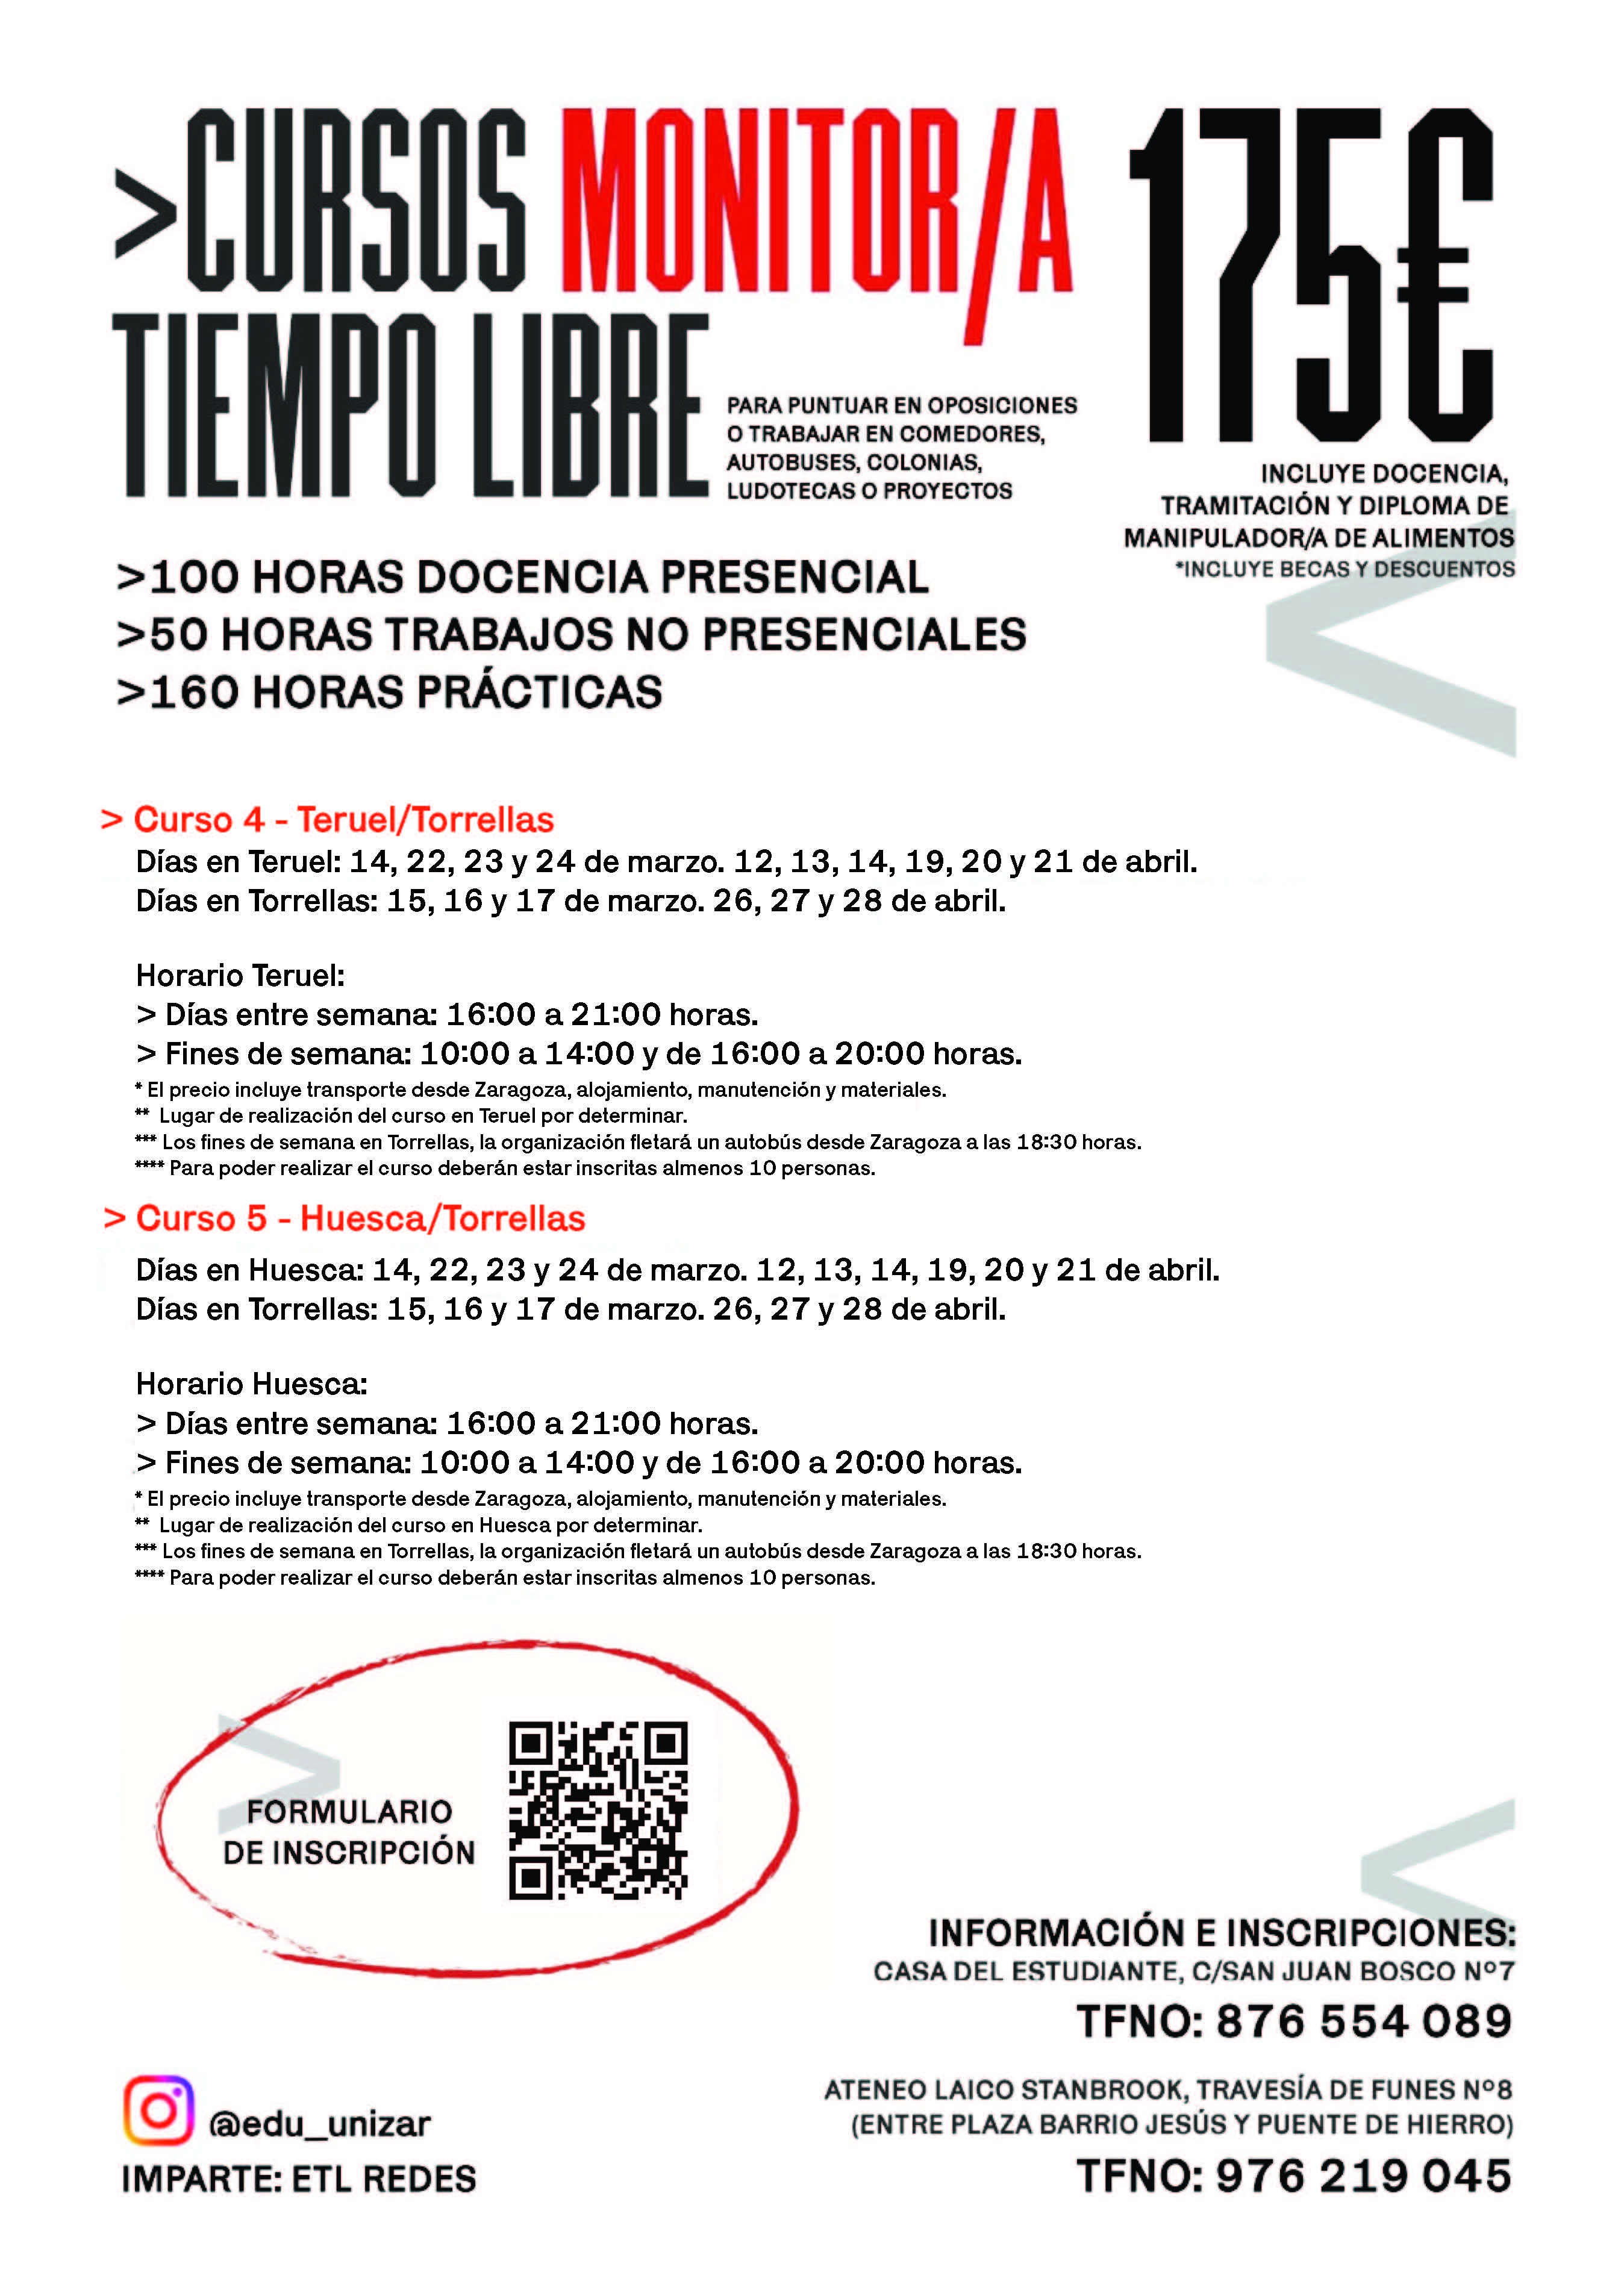 Curso de Monitor/a de Tiempo Libre en Huesca/Torrellas